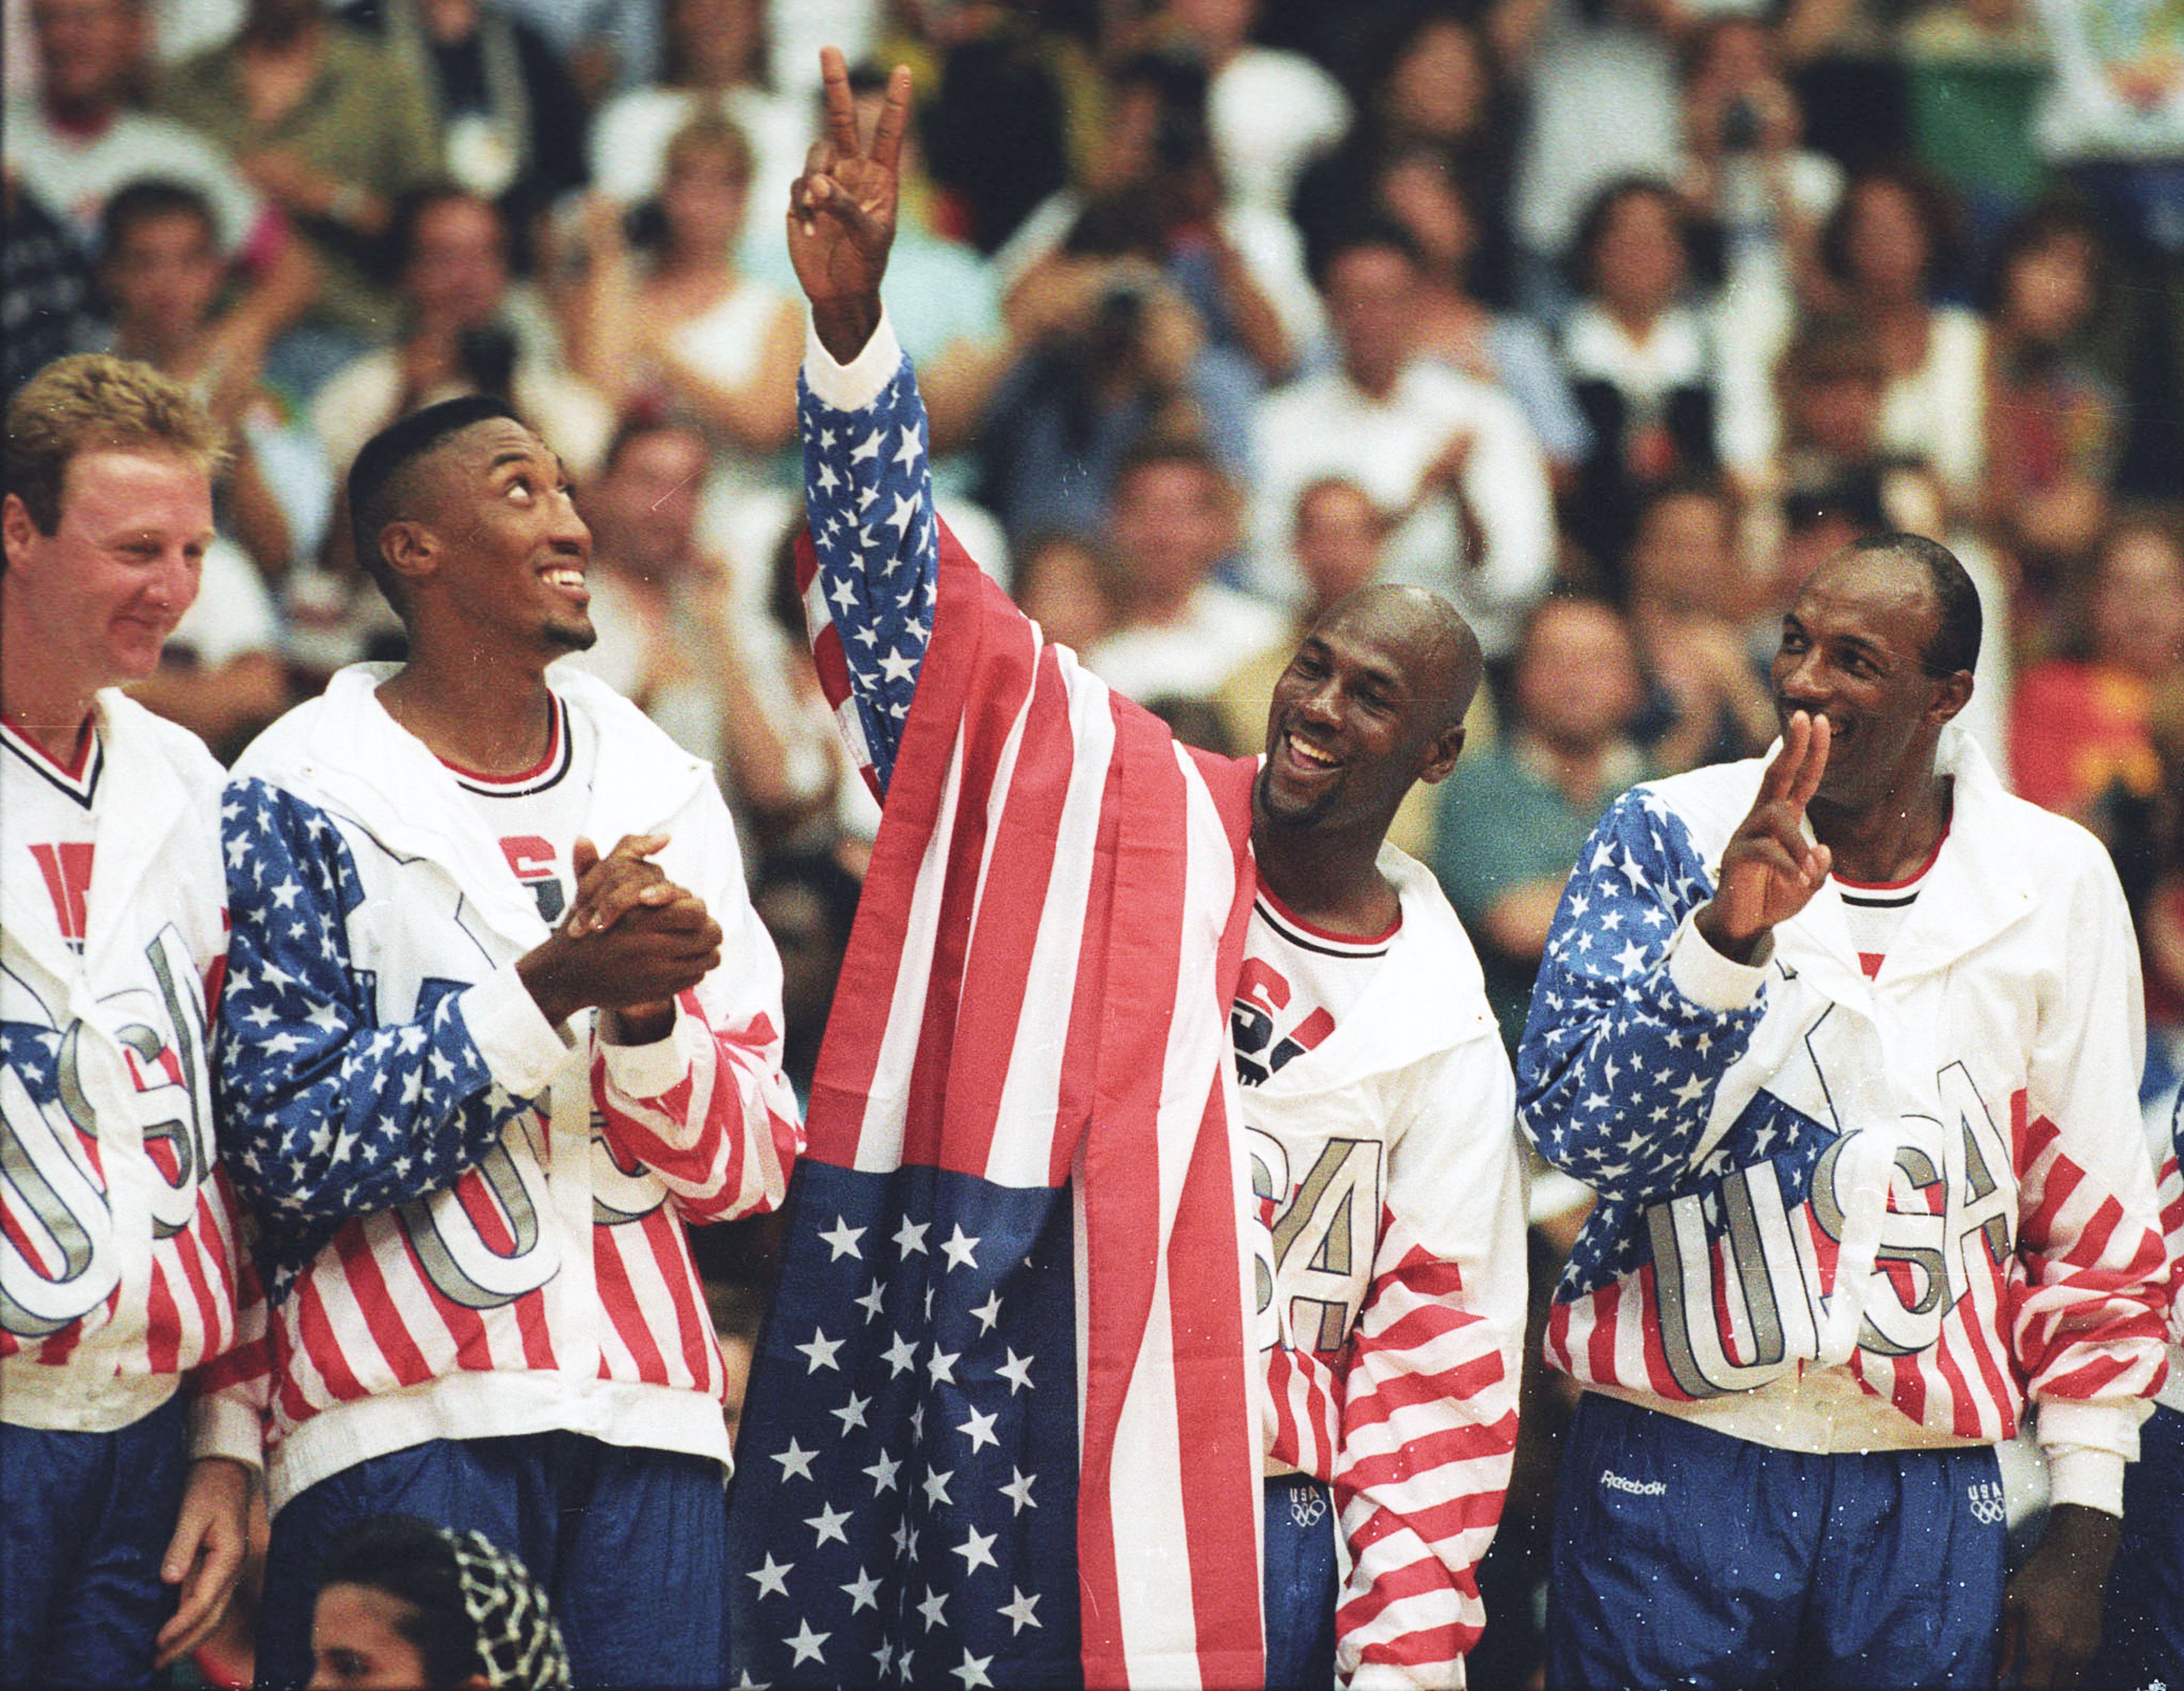 El 'dream team' de Michael Jordan ganó la medalla de oro en Barcelona 1992.